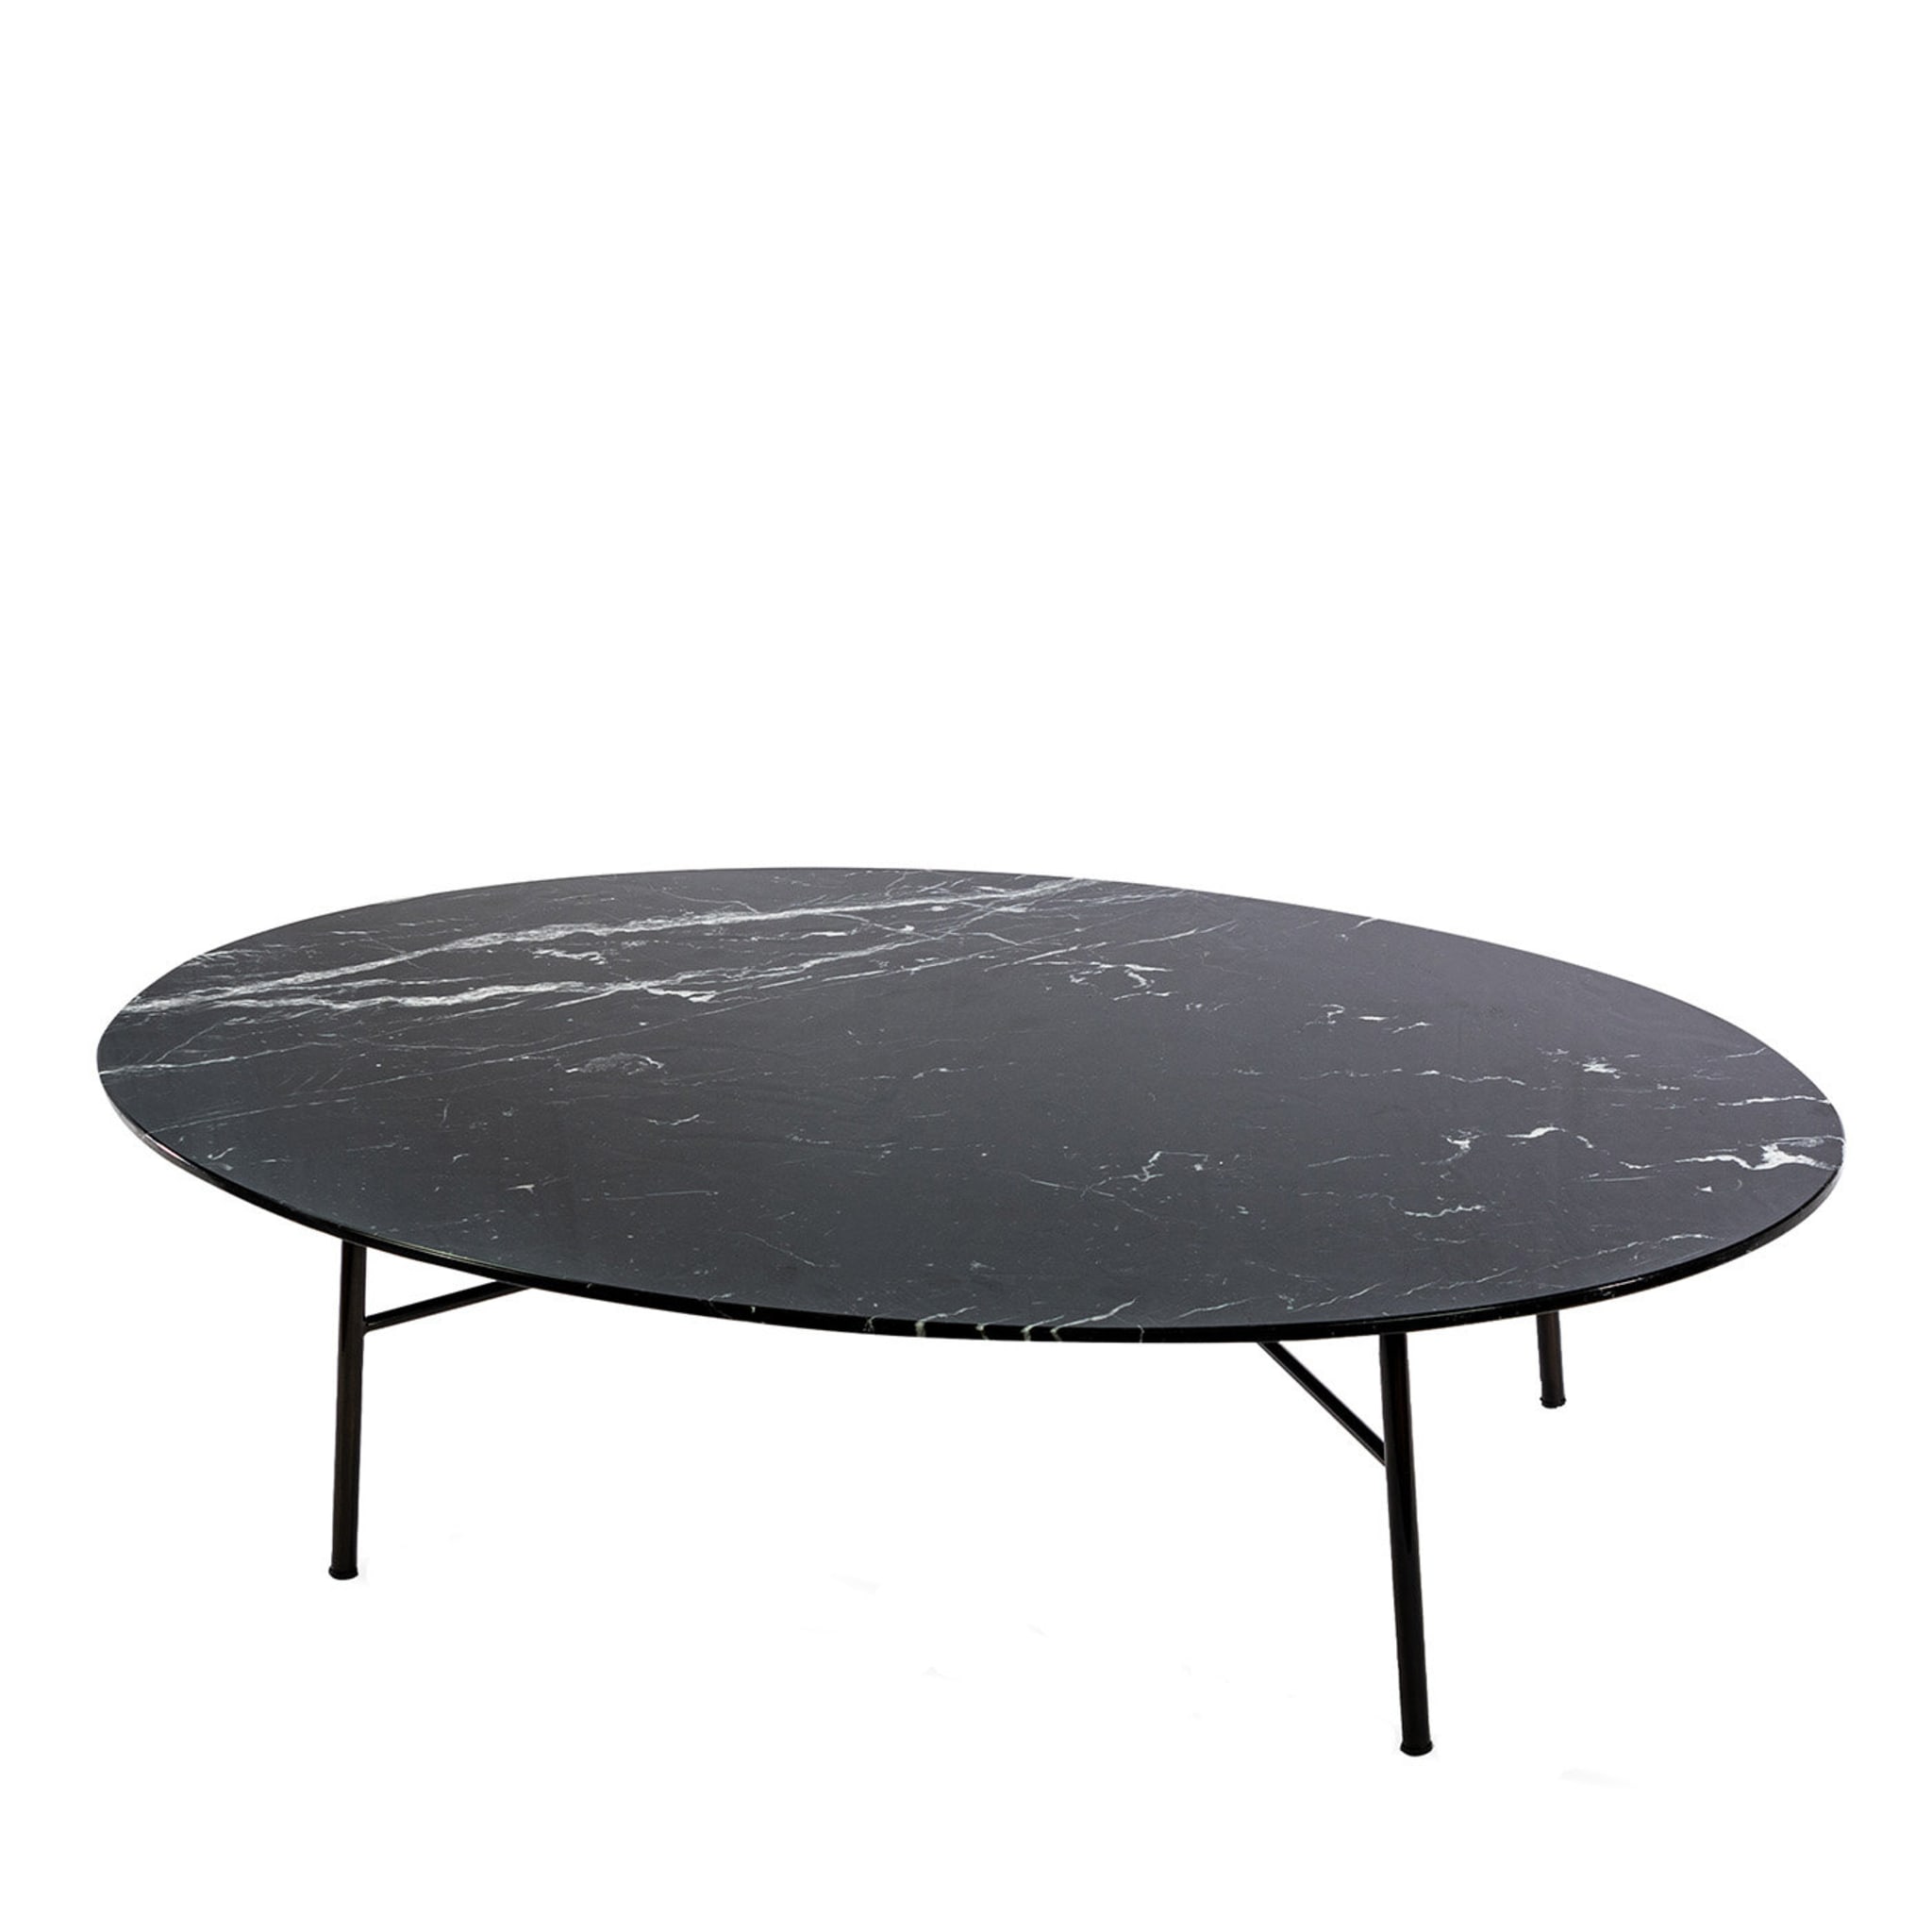 Table basse ovale Yuki avec plateau en marquinia noir # 1 par Ep Studio - Vue principale